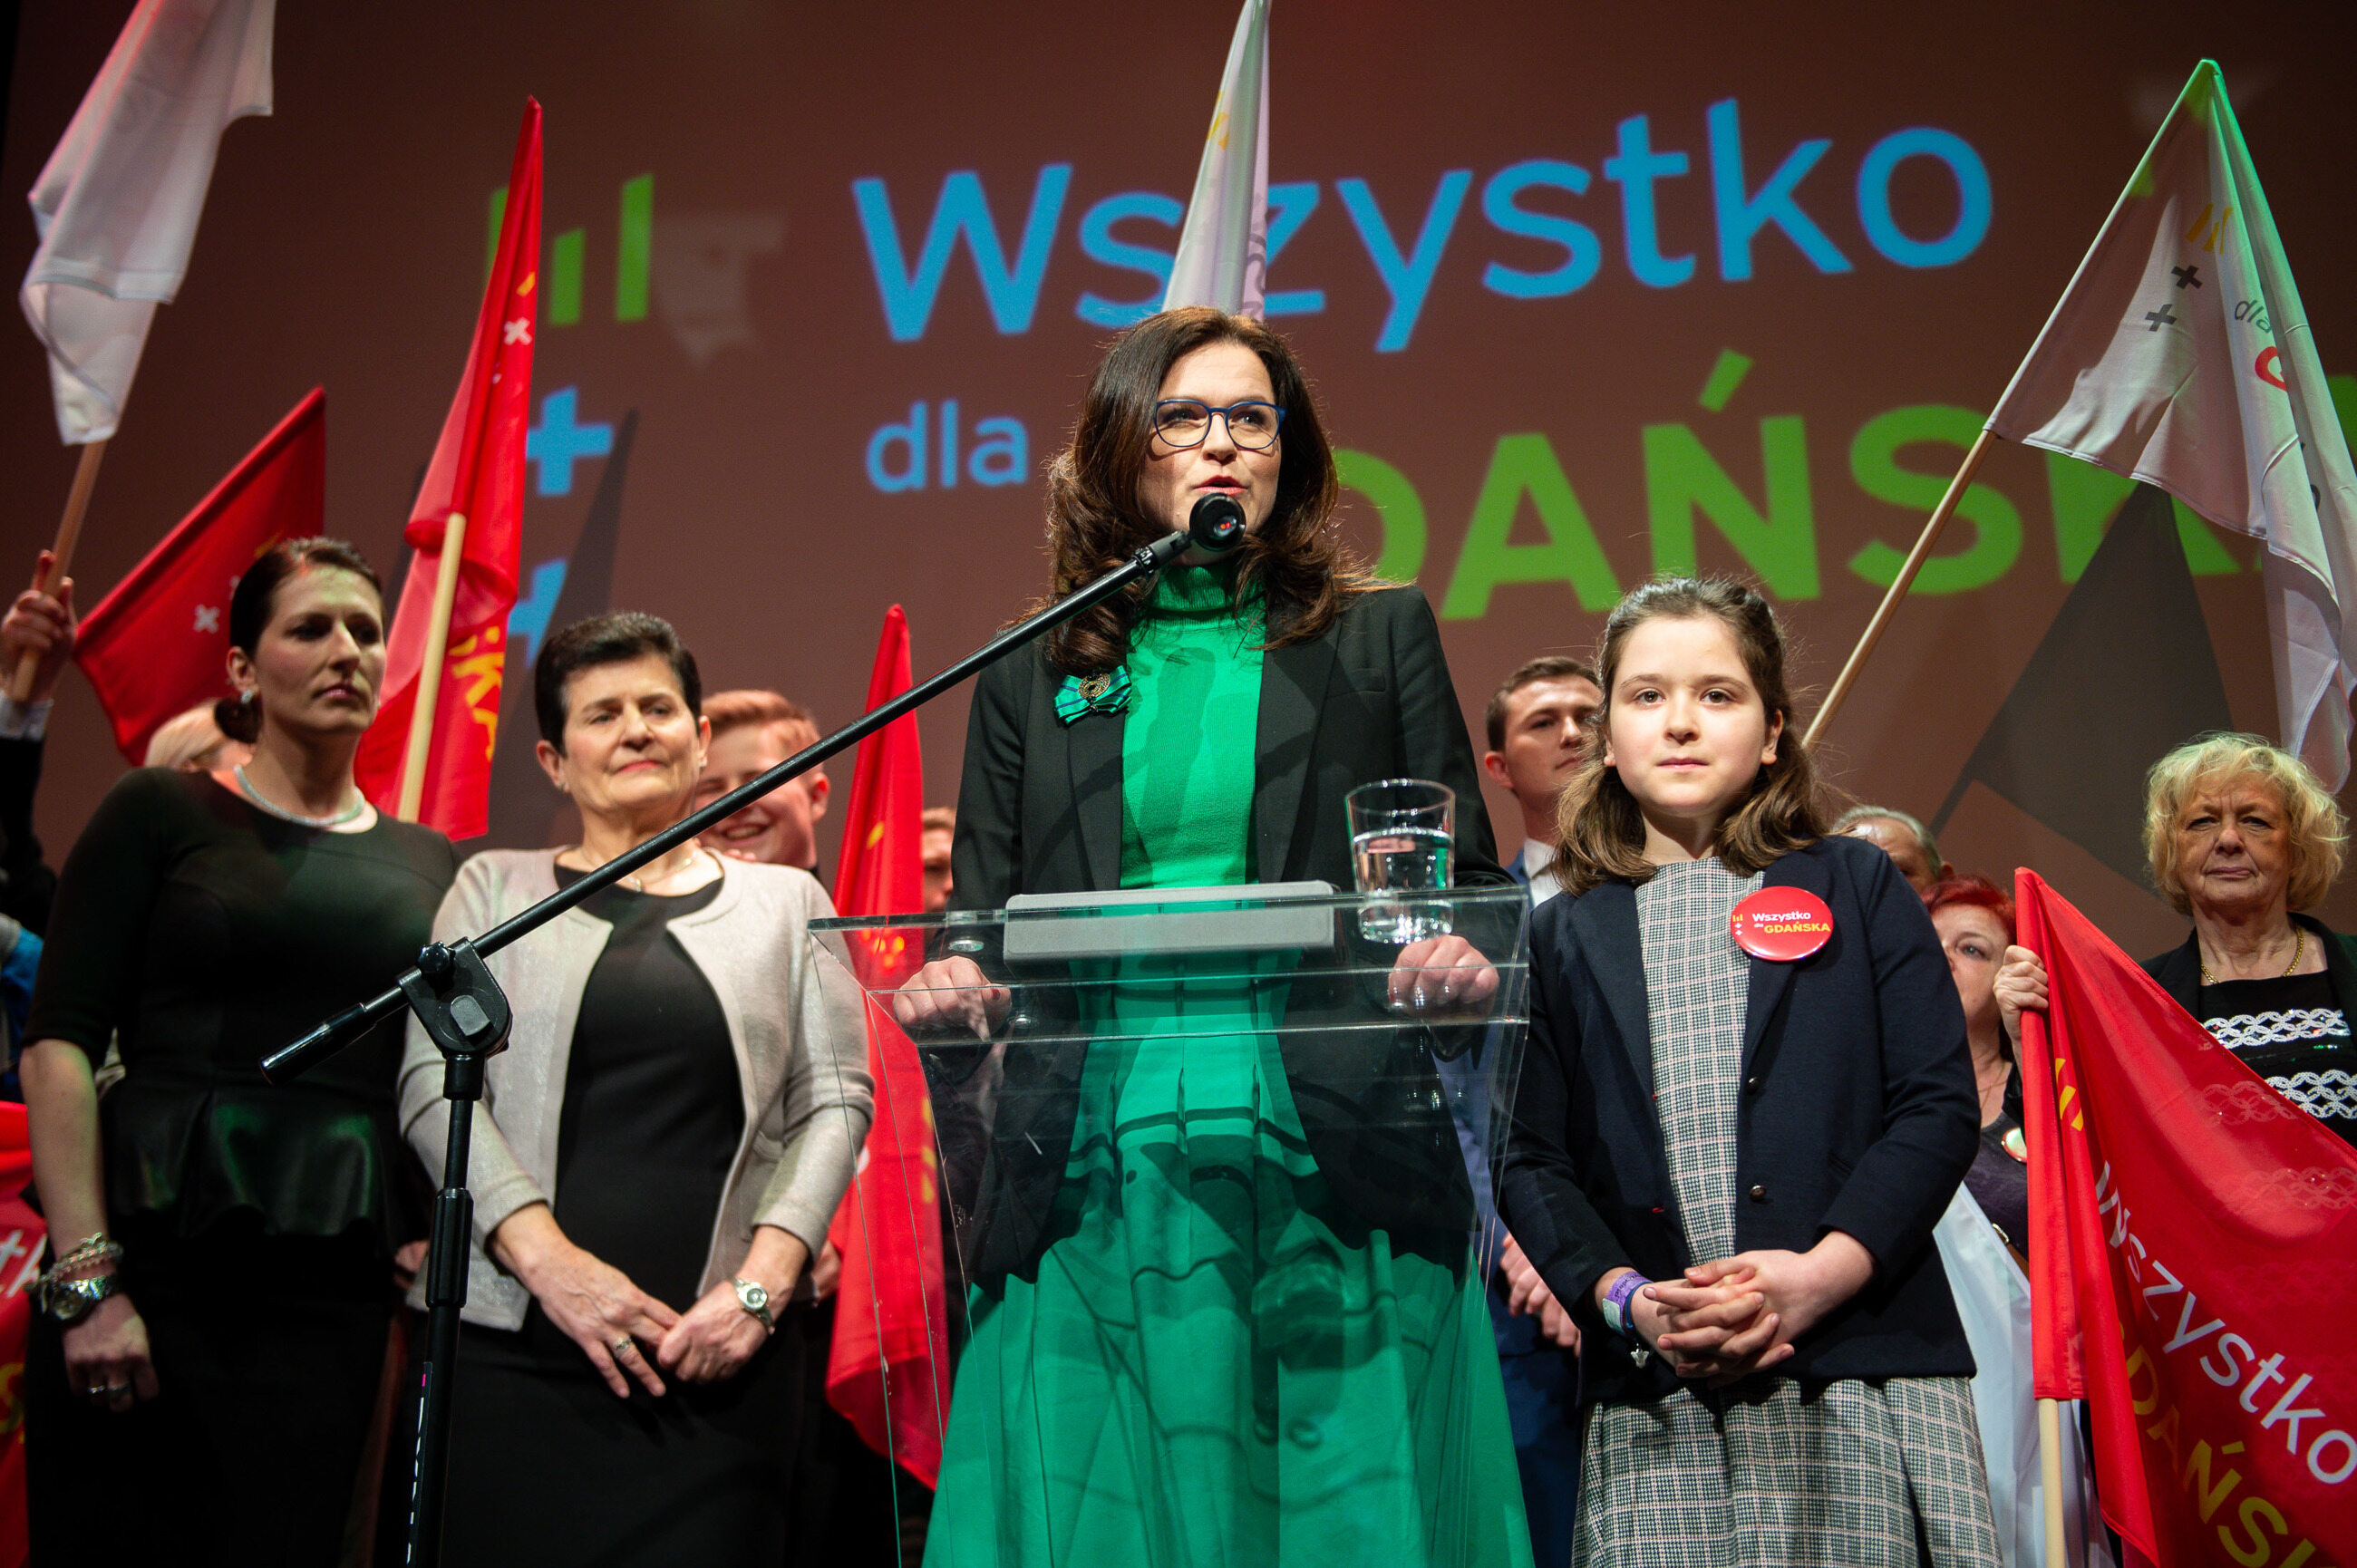 Przedterminowe wybory prezydenckie w Gdańsku wygrała Aleksandra Dulkiewicz. Ile procent głosów otrzymała?